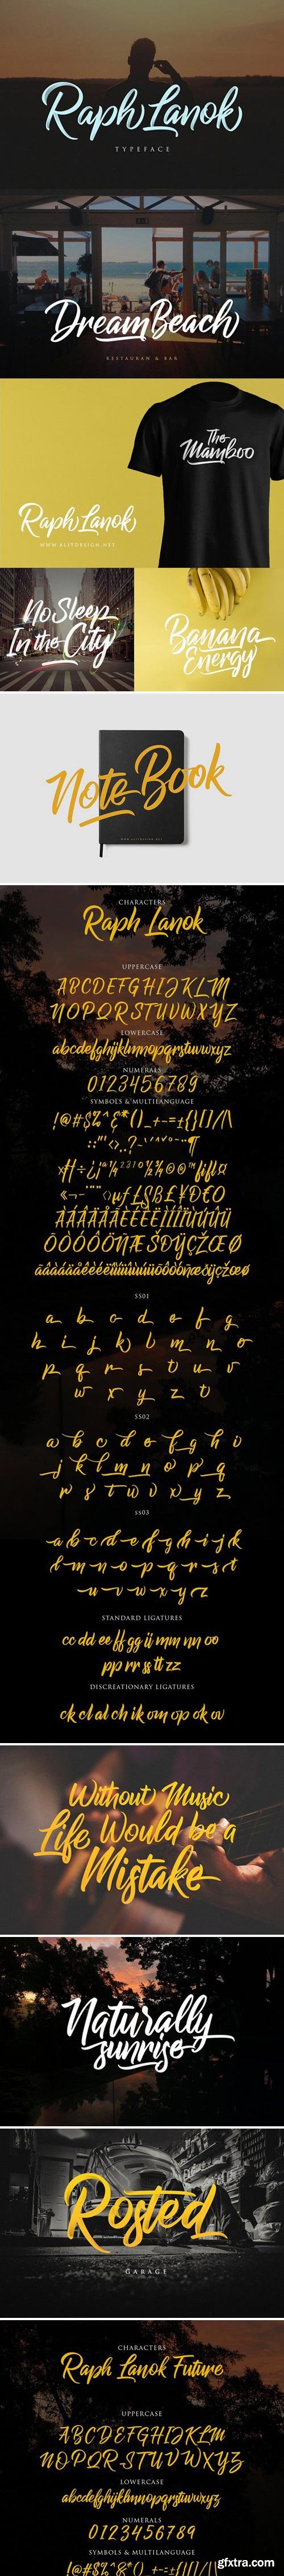 CM - Raph Lanok Typeface 1643862